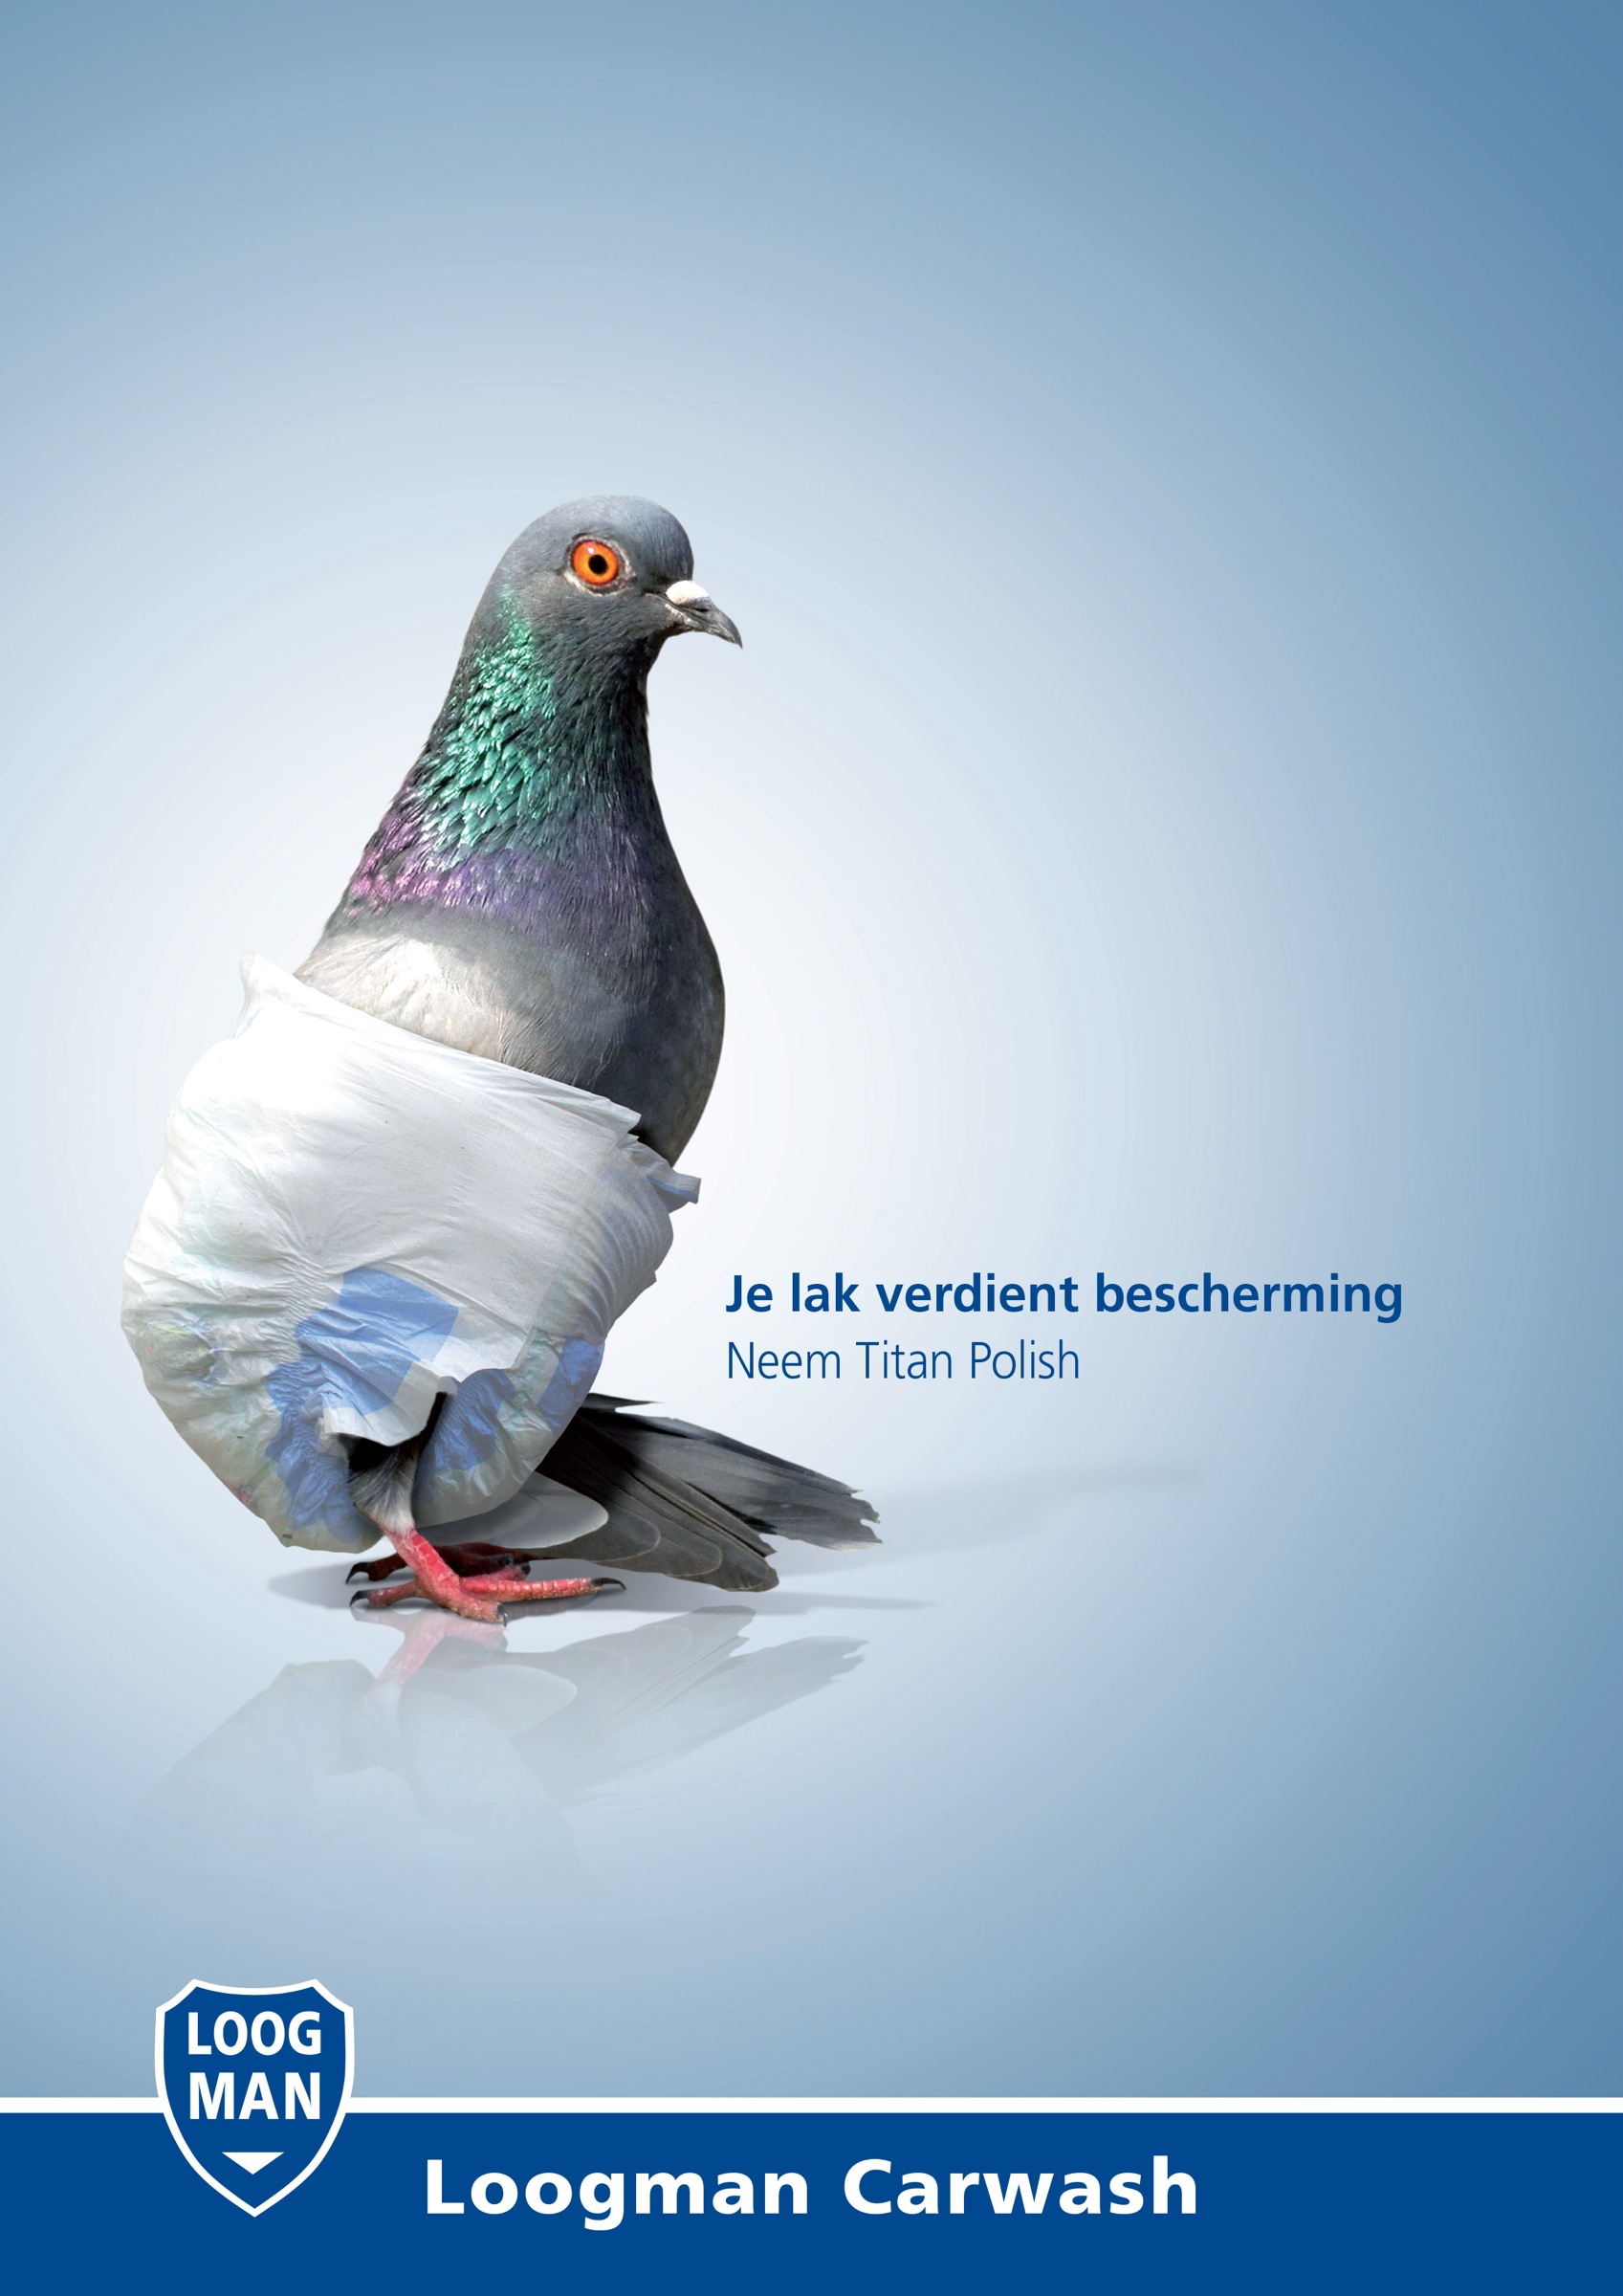 荷兰loogman洗车行平面广告设计